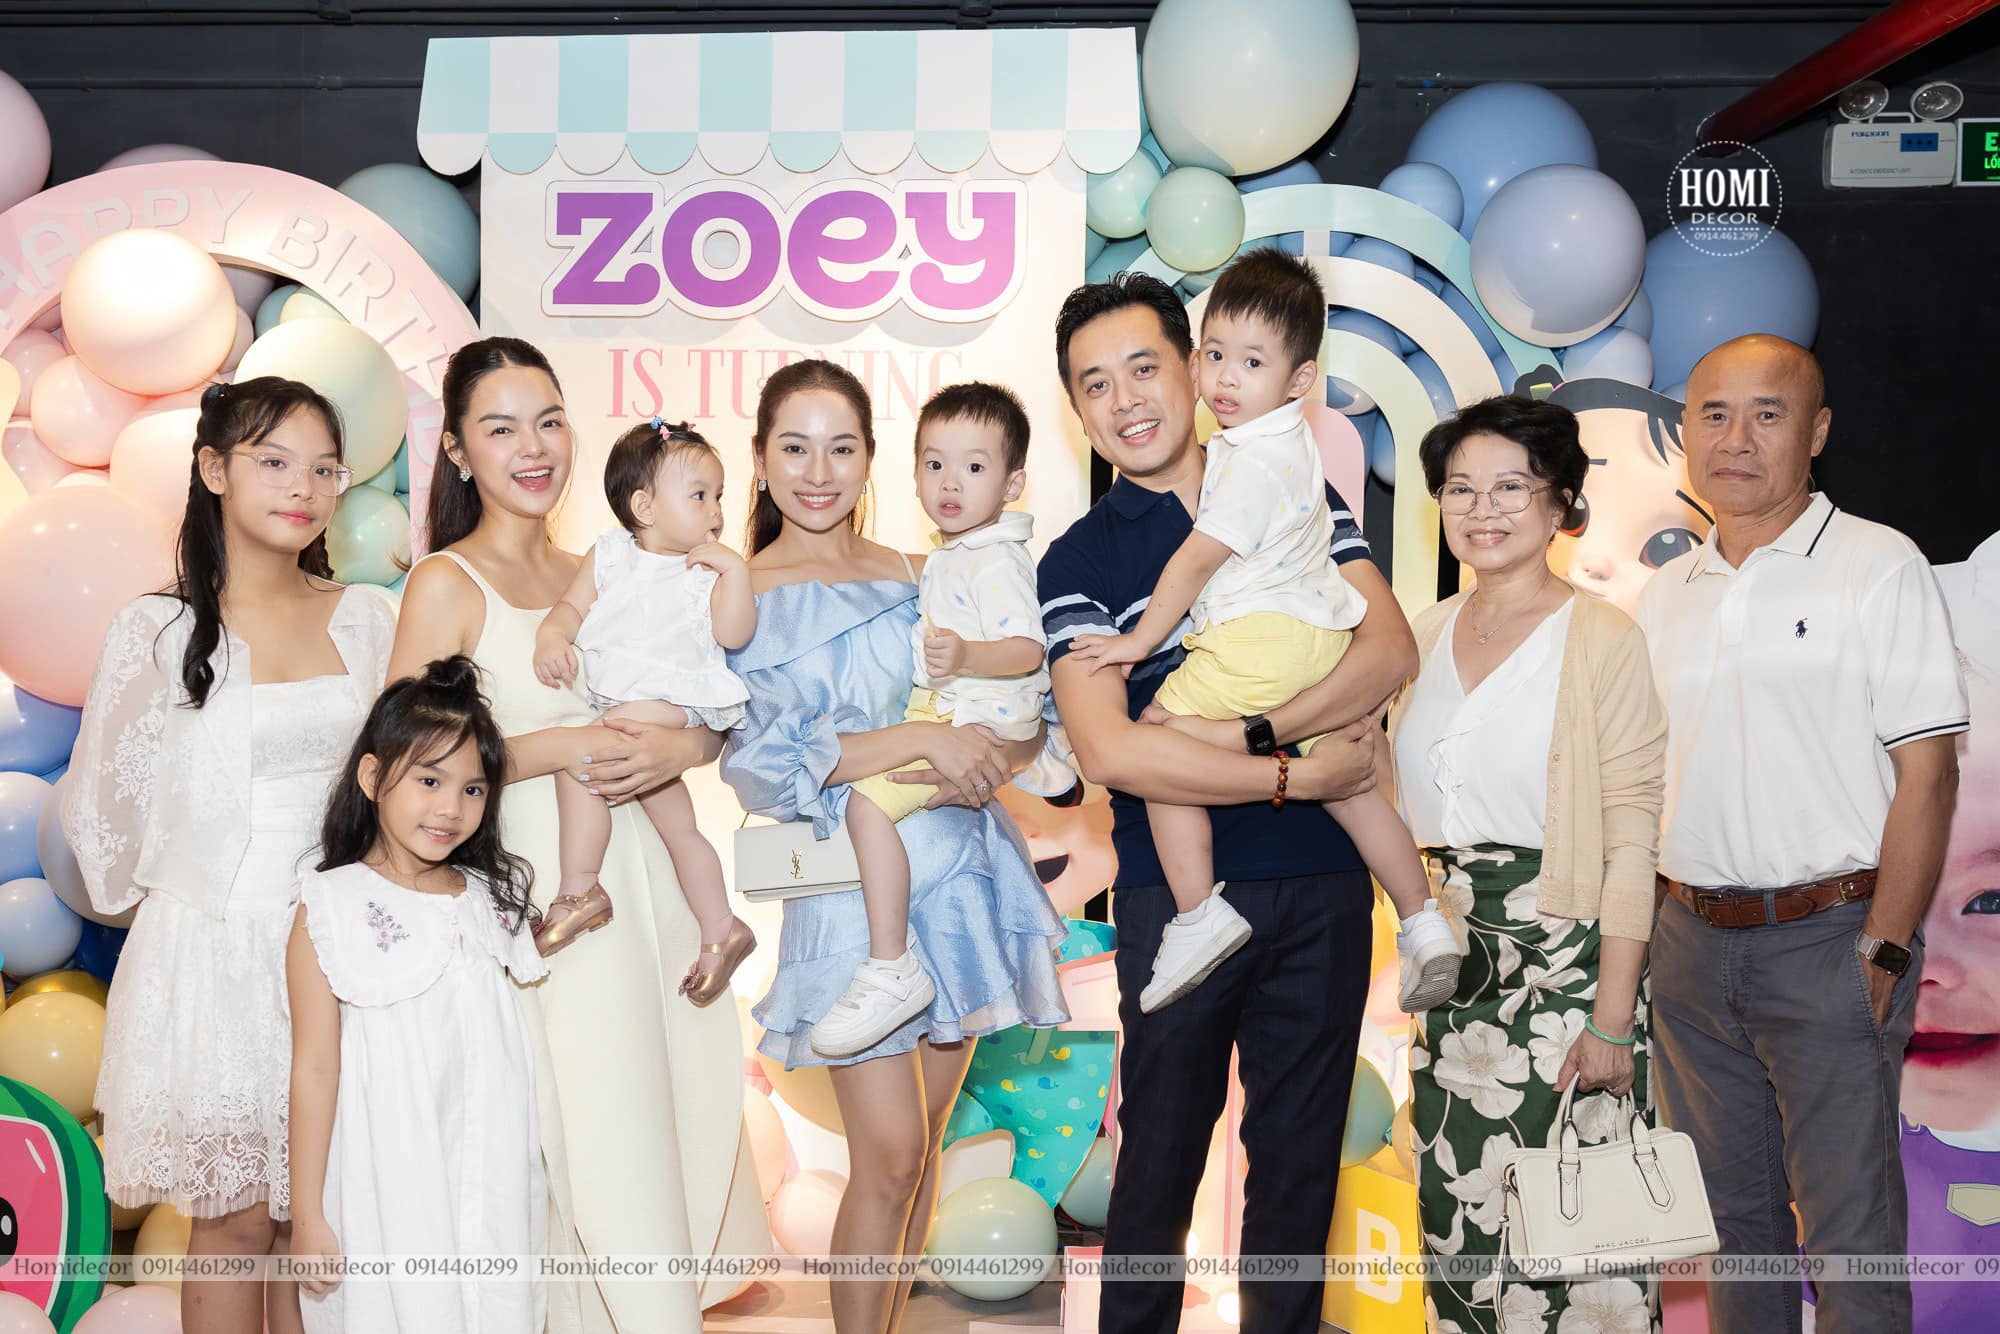 Trang trí sinh nhật bé Zoey nhà ca sĩ Phạm Quỳnh Anh theo chủ đề cocomelon